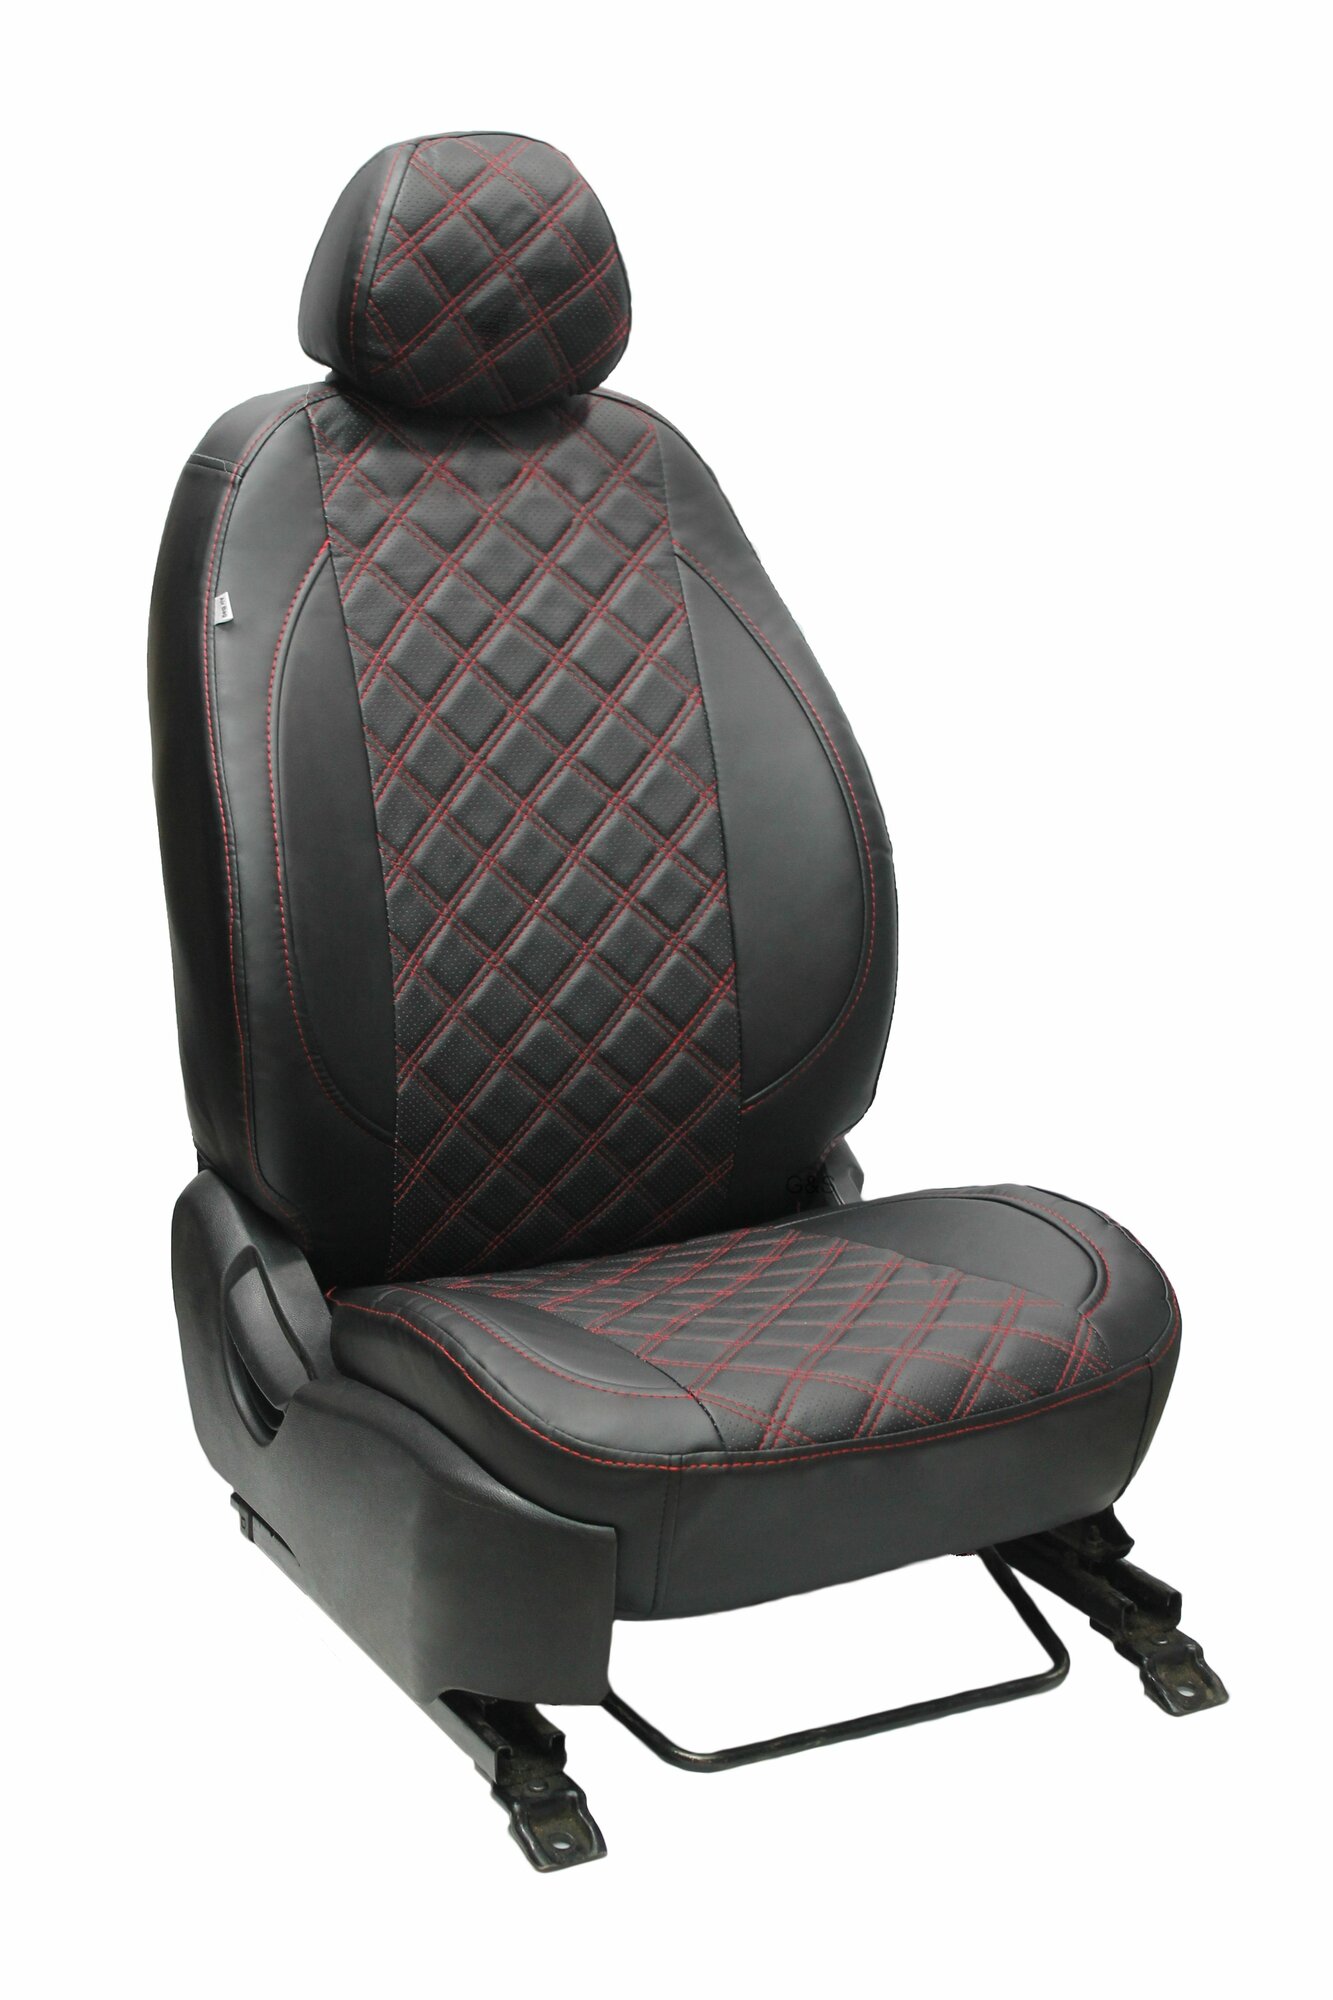 Чехлы для автомобильных сидений комплект Premium на VOLKSWAGEN T5 CARAVELLE 8 мест (2003-н. в.) минивэн авточехлы модельные экокожа черный ромб красная нить (Фольксваген Каравелла)